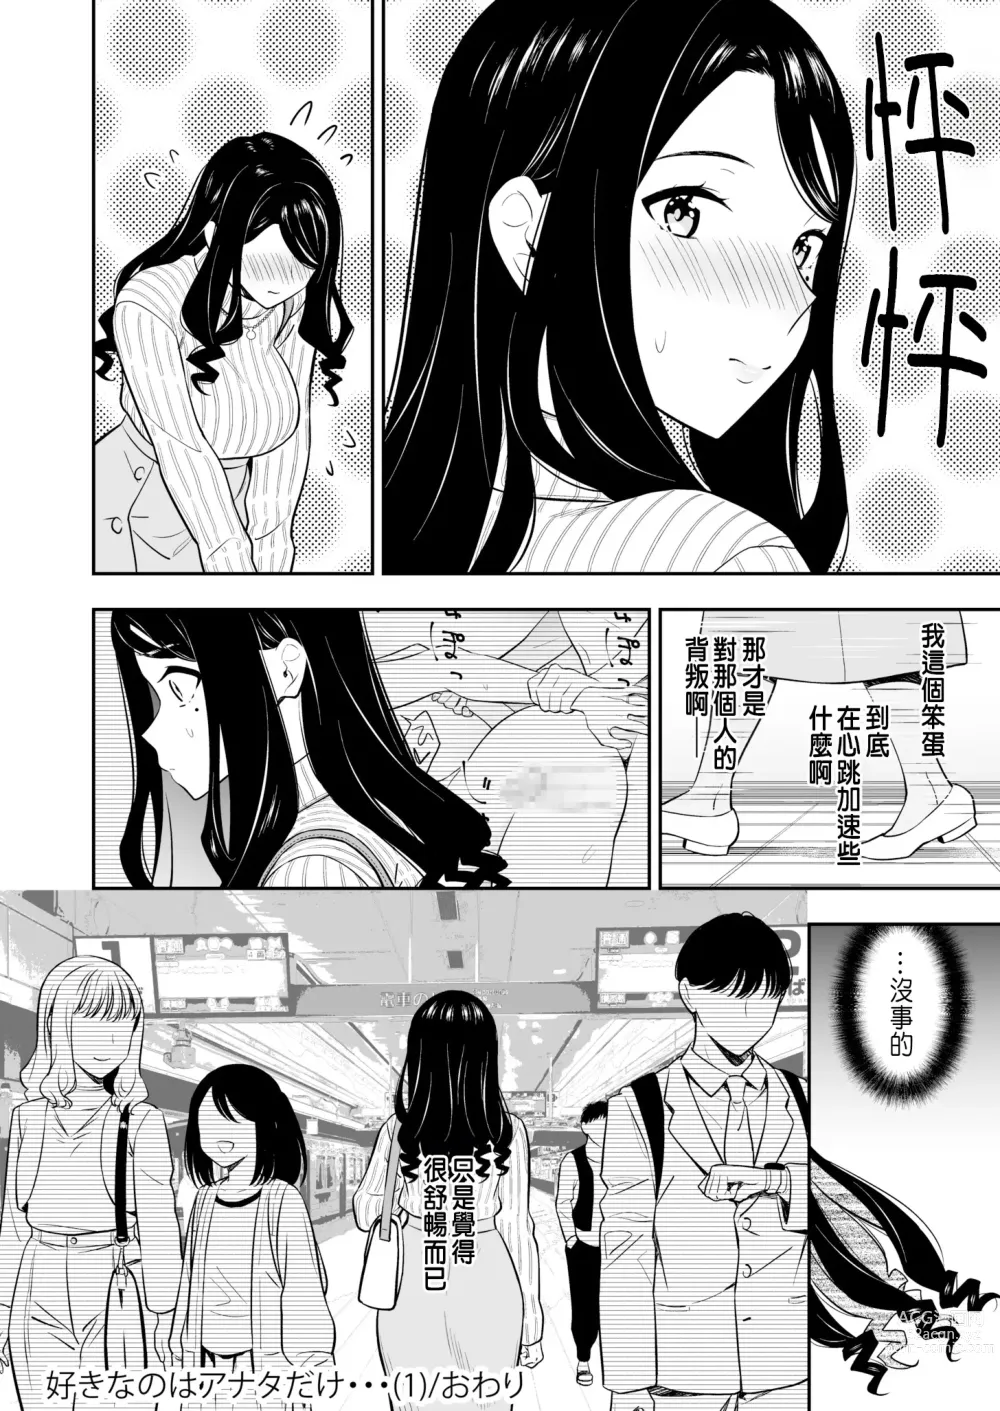 Page 32 of manga Suki nano wa Anata dake... 1